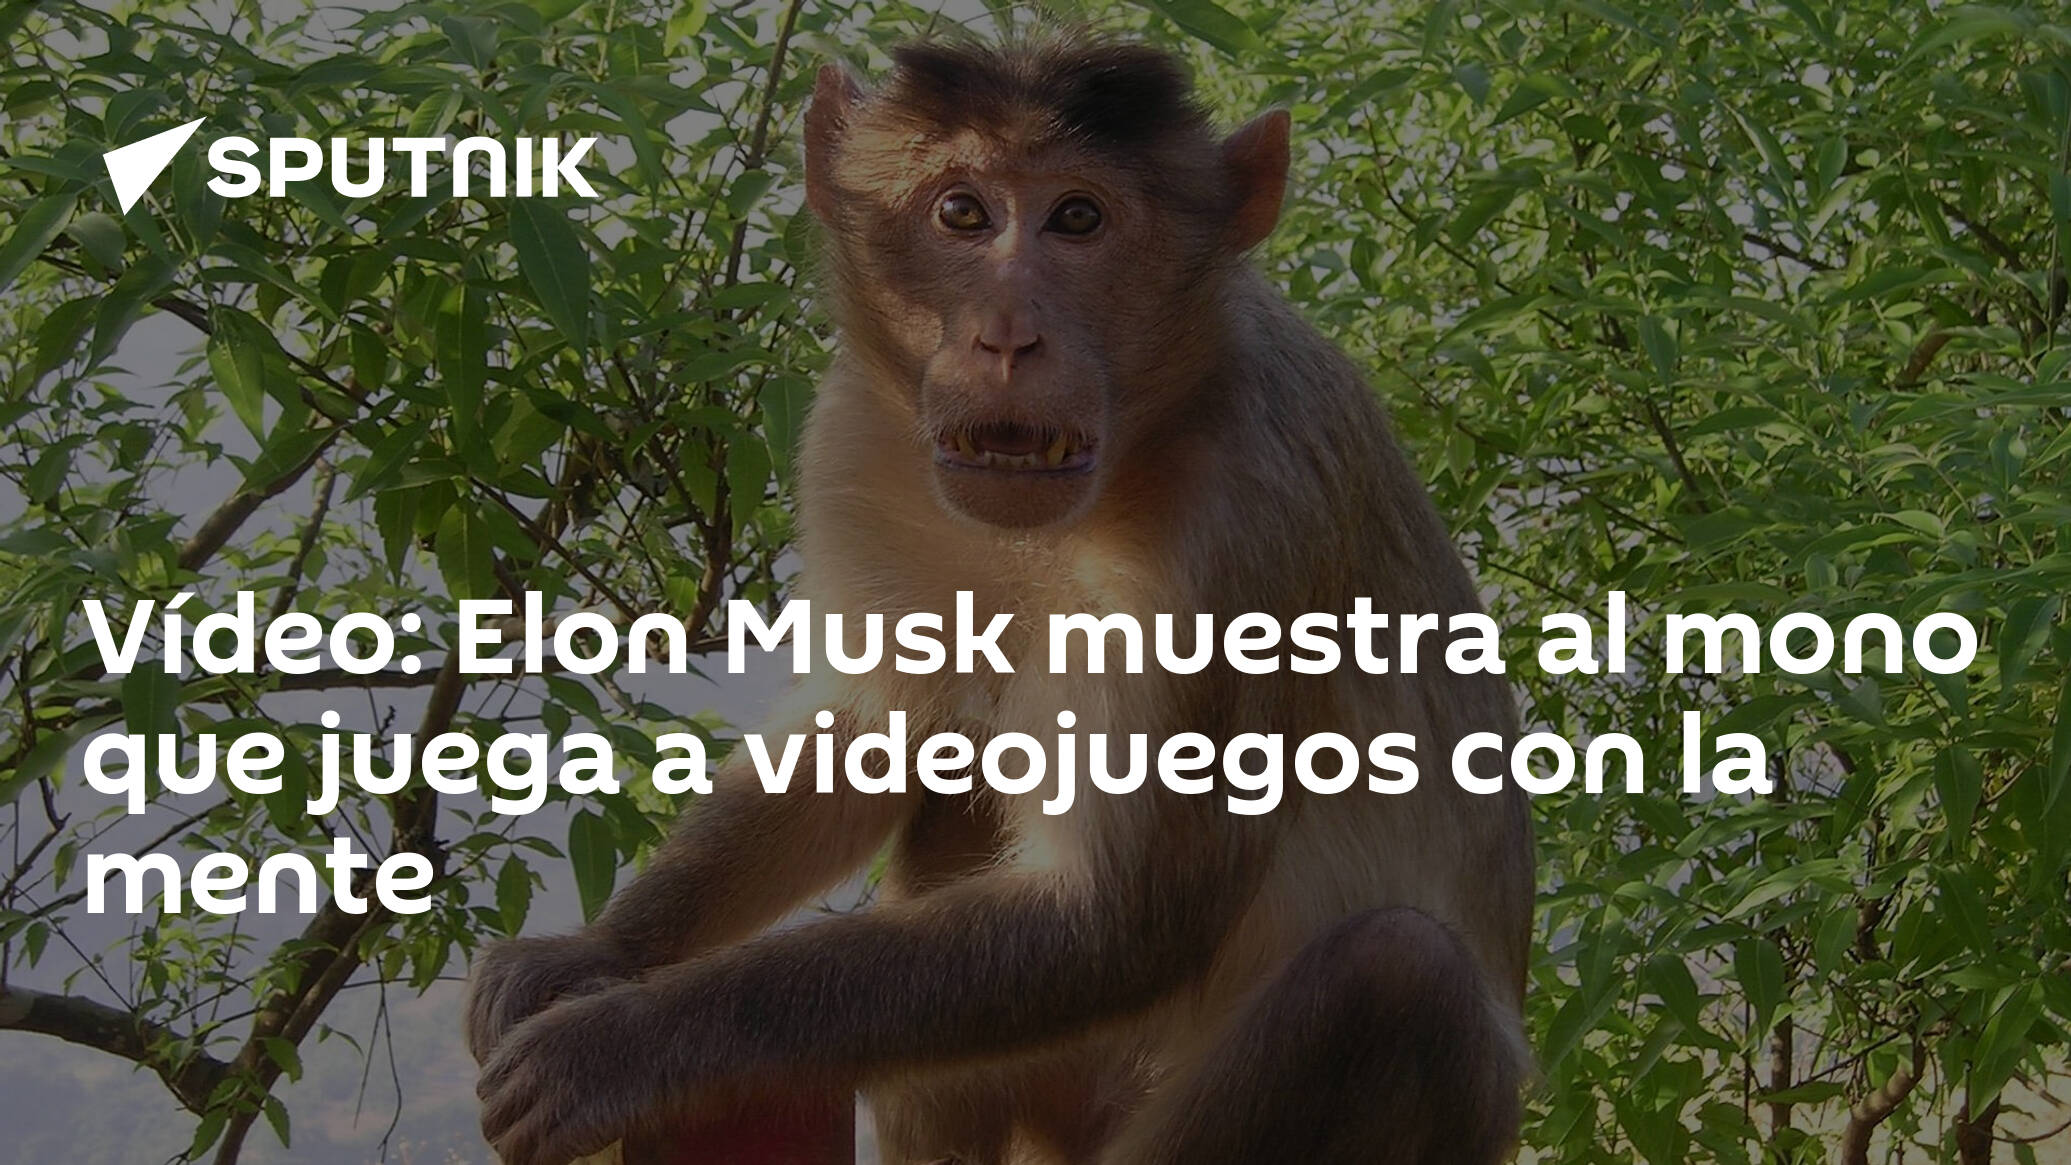 Vídeo: Elon Musk muestra al mono que juega a videojuegos con la mente -  09.04.2021, Sputnik Mundo